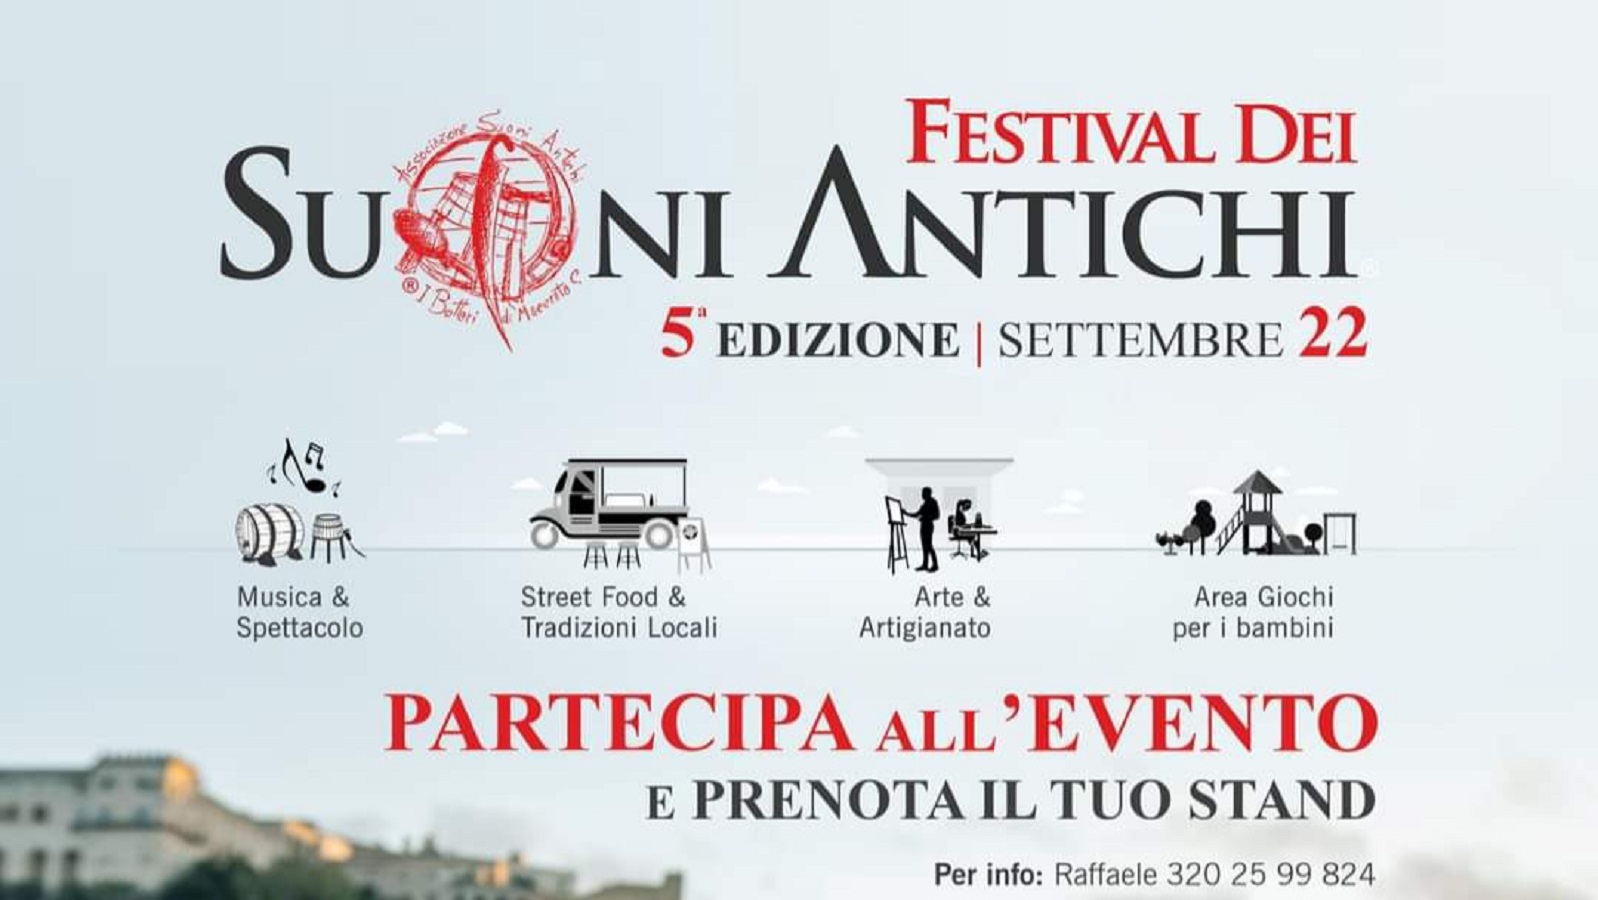 Festival dei Suoni Antichi 2022 Macerata Campania.jpg